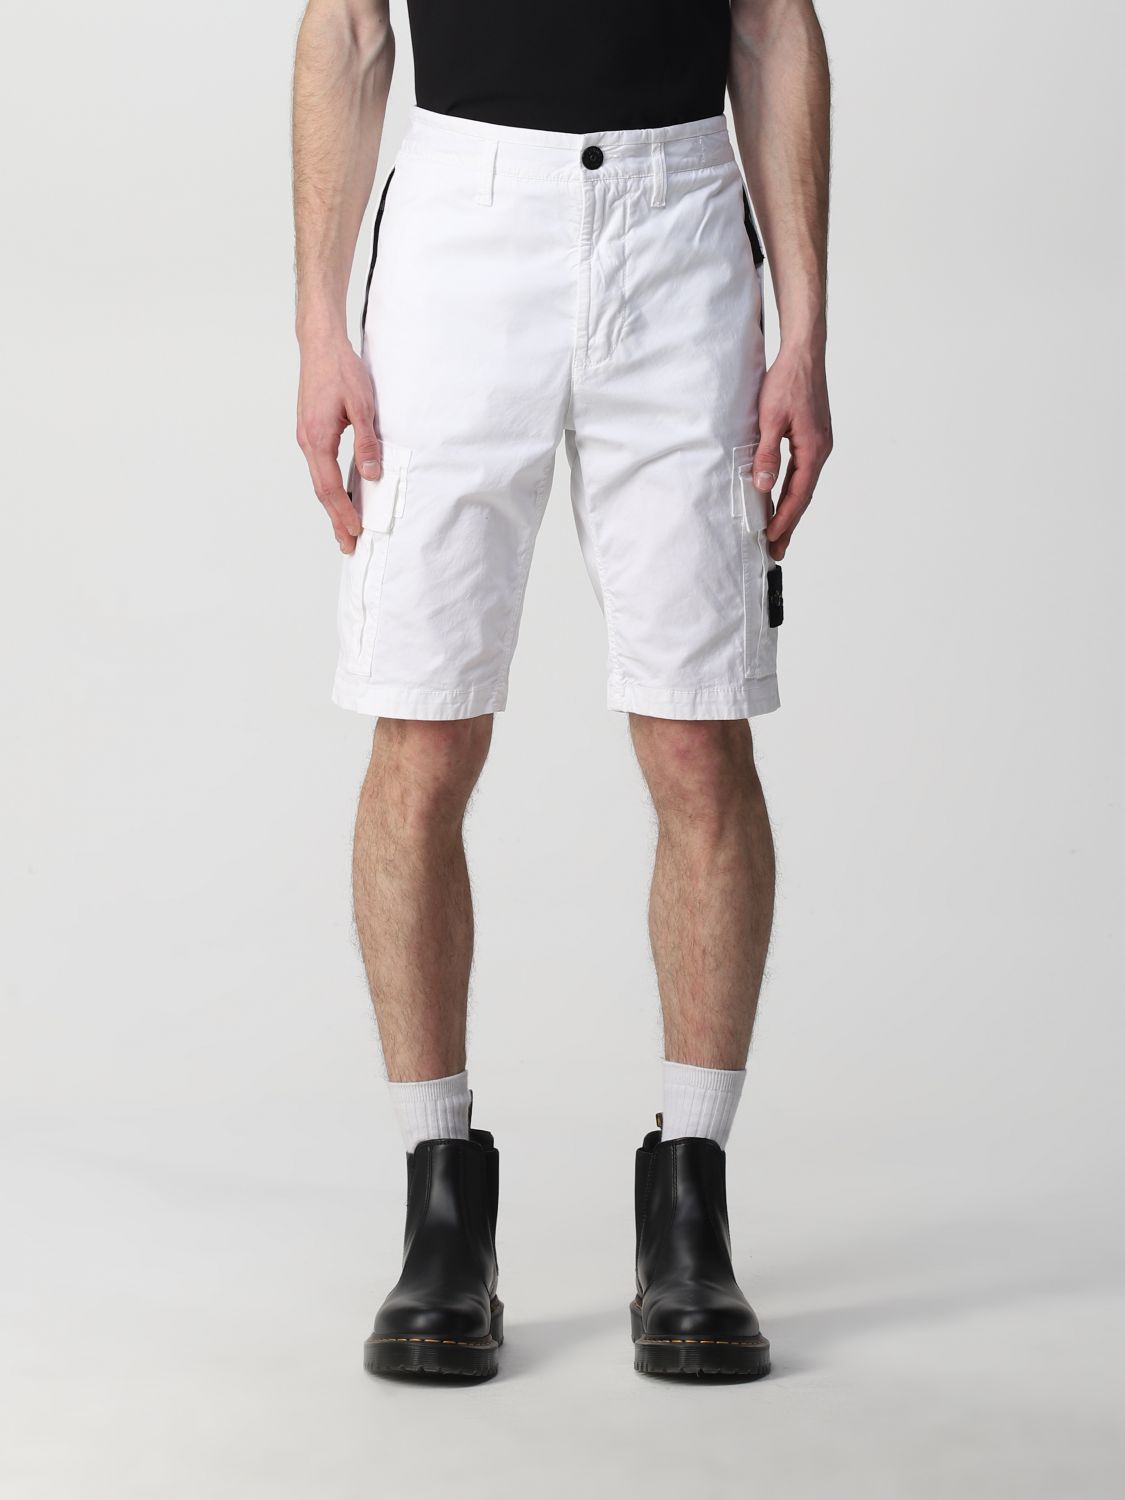 STONE ISLAND: cargo bermuda shorts in Supima® cotton - White | Stone Island short on GIGLIO.COM